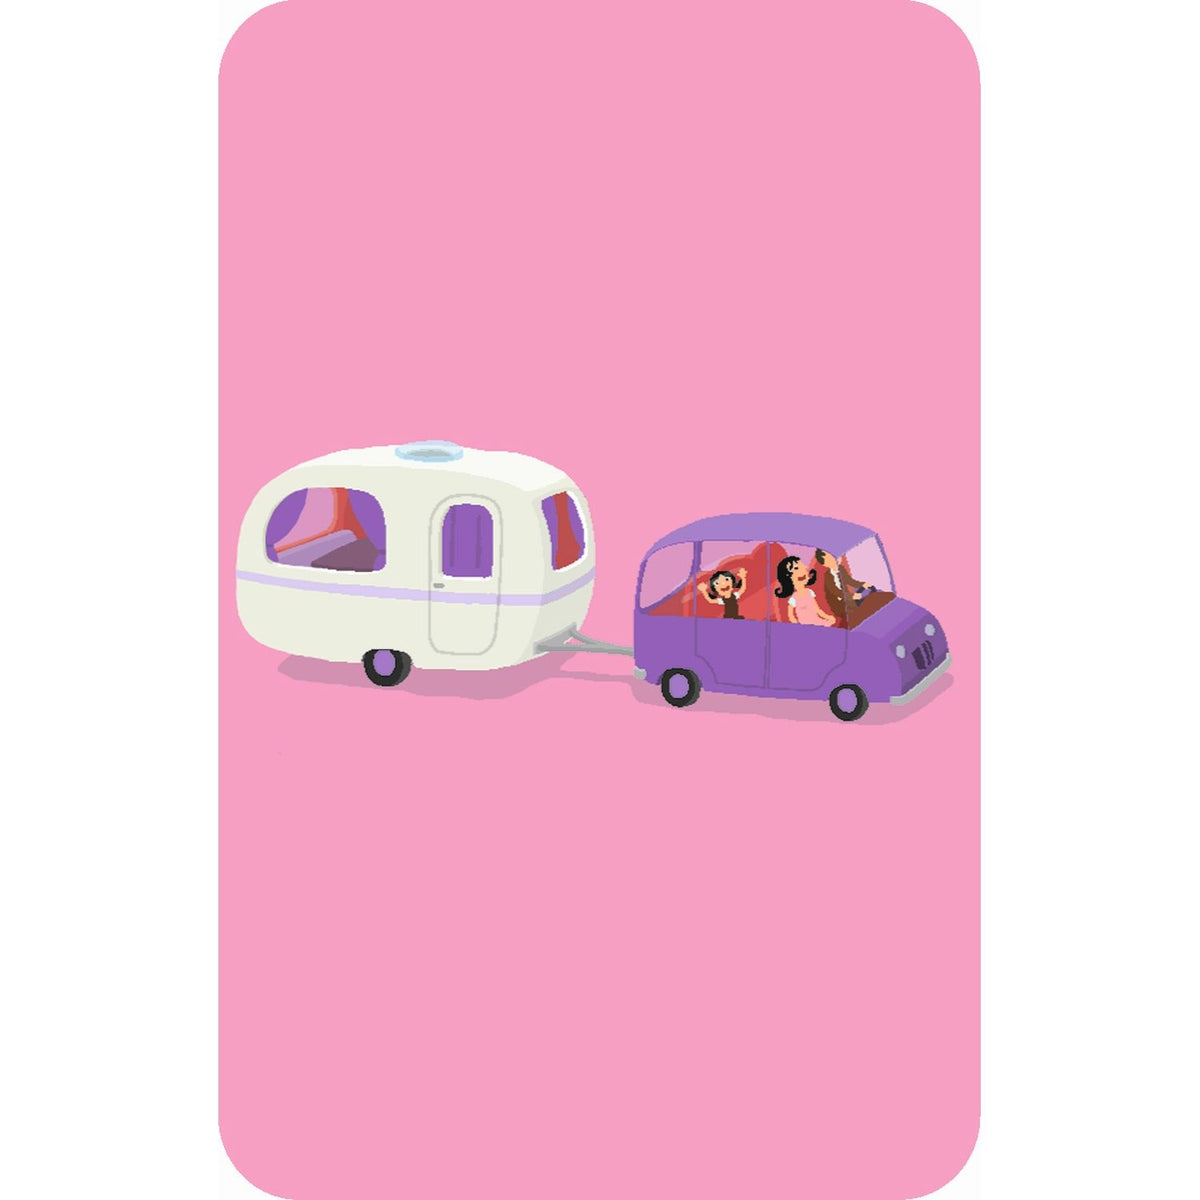 DJECO Mini Reisespiel: Katuvu. Ein Reisebeobachtungsspiel für 2 - 4 Spieler mit 60 Spielkarten für Kinder ab 4 Jahren, um mit der Familie auf endlosen Reisen zu spielen.